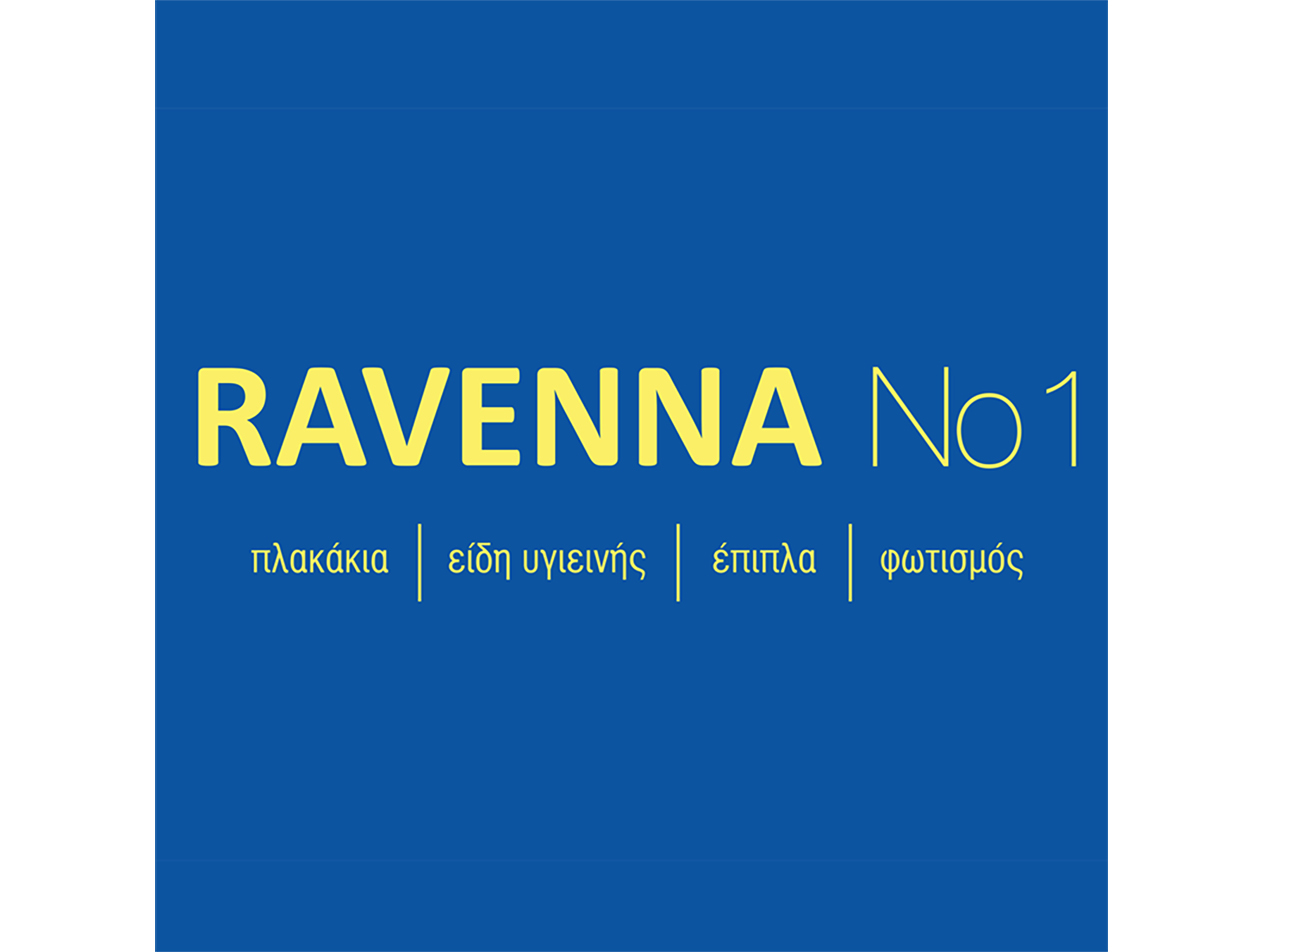 RAVENNA No1: Διάκριση στα Superbrands για 2η συνεχή φορά!